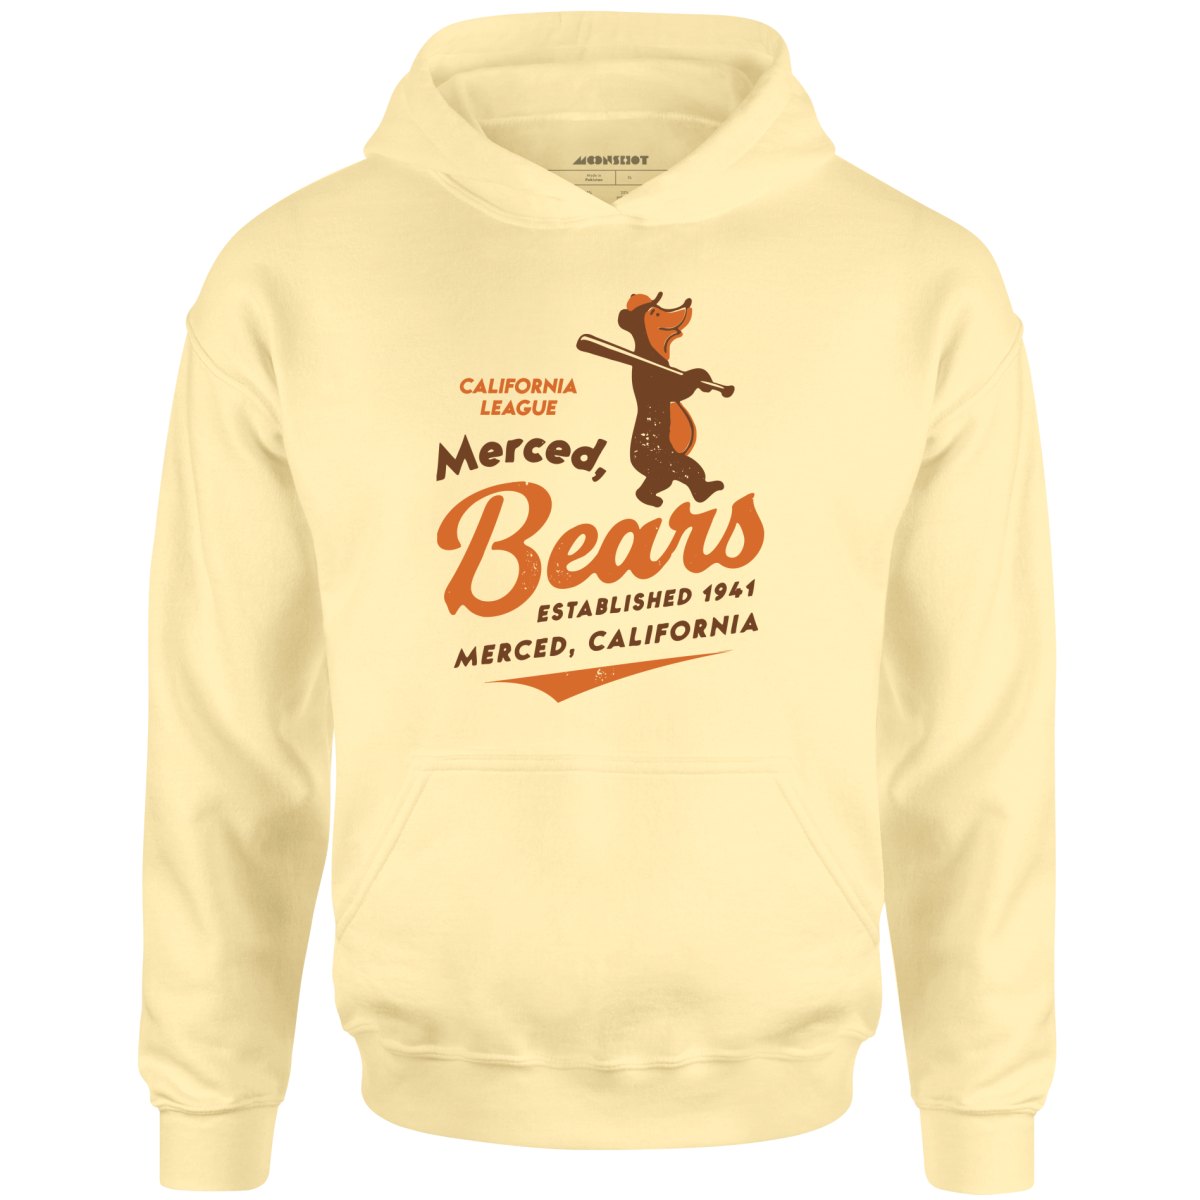 Merced Bears - California - Vintage Defunct Baseball Teams - Unisex Hoodie